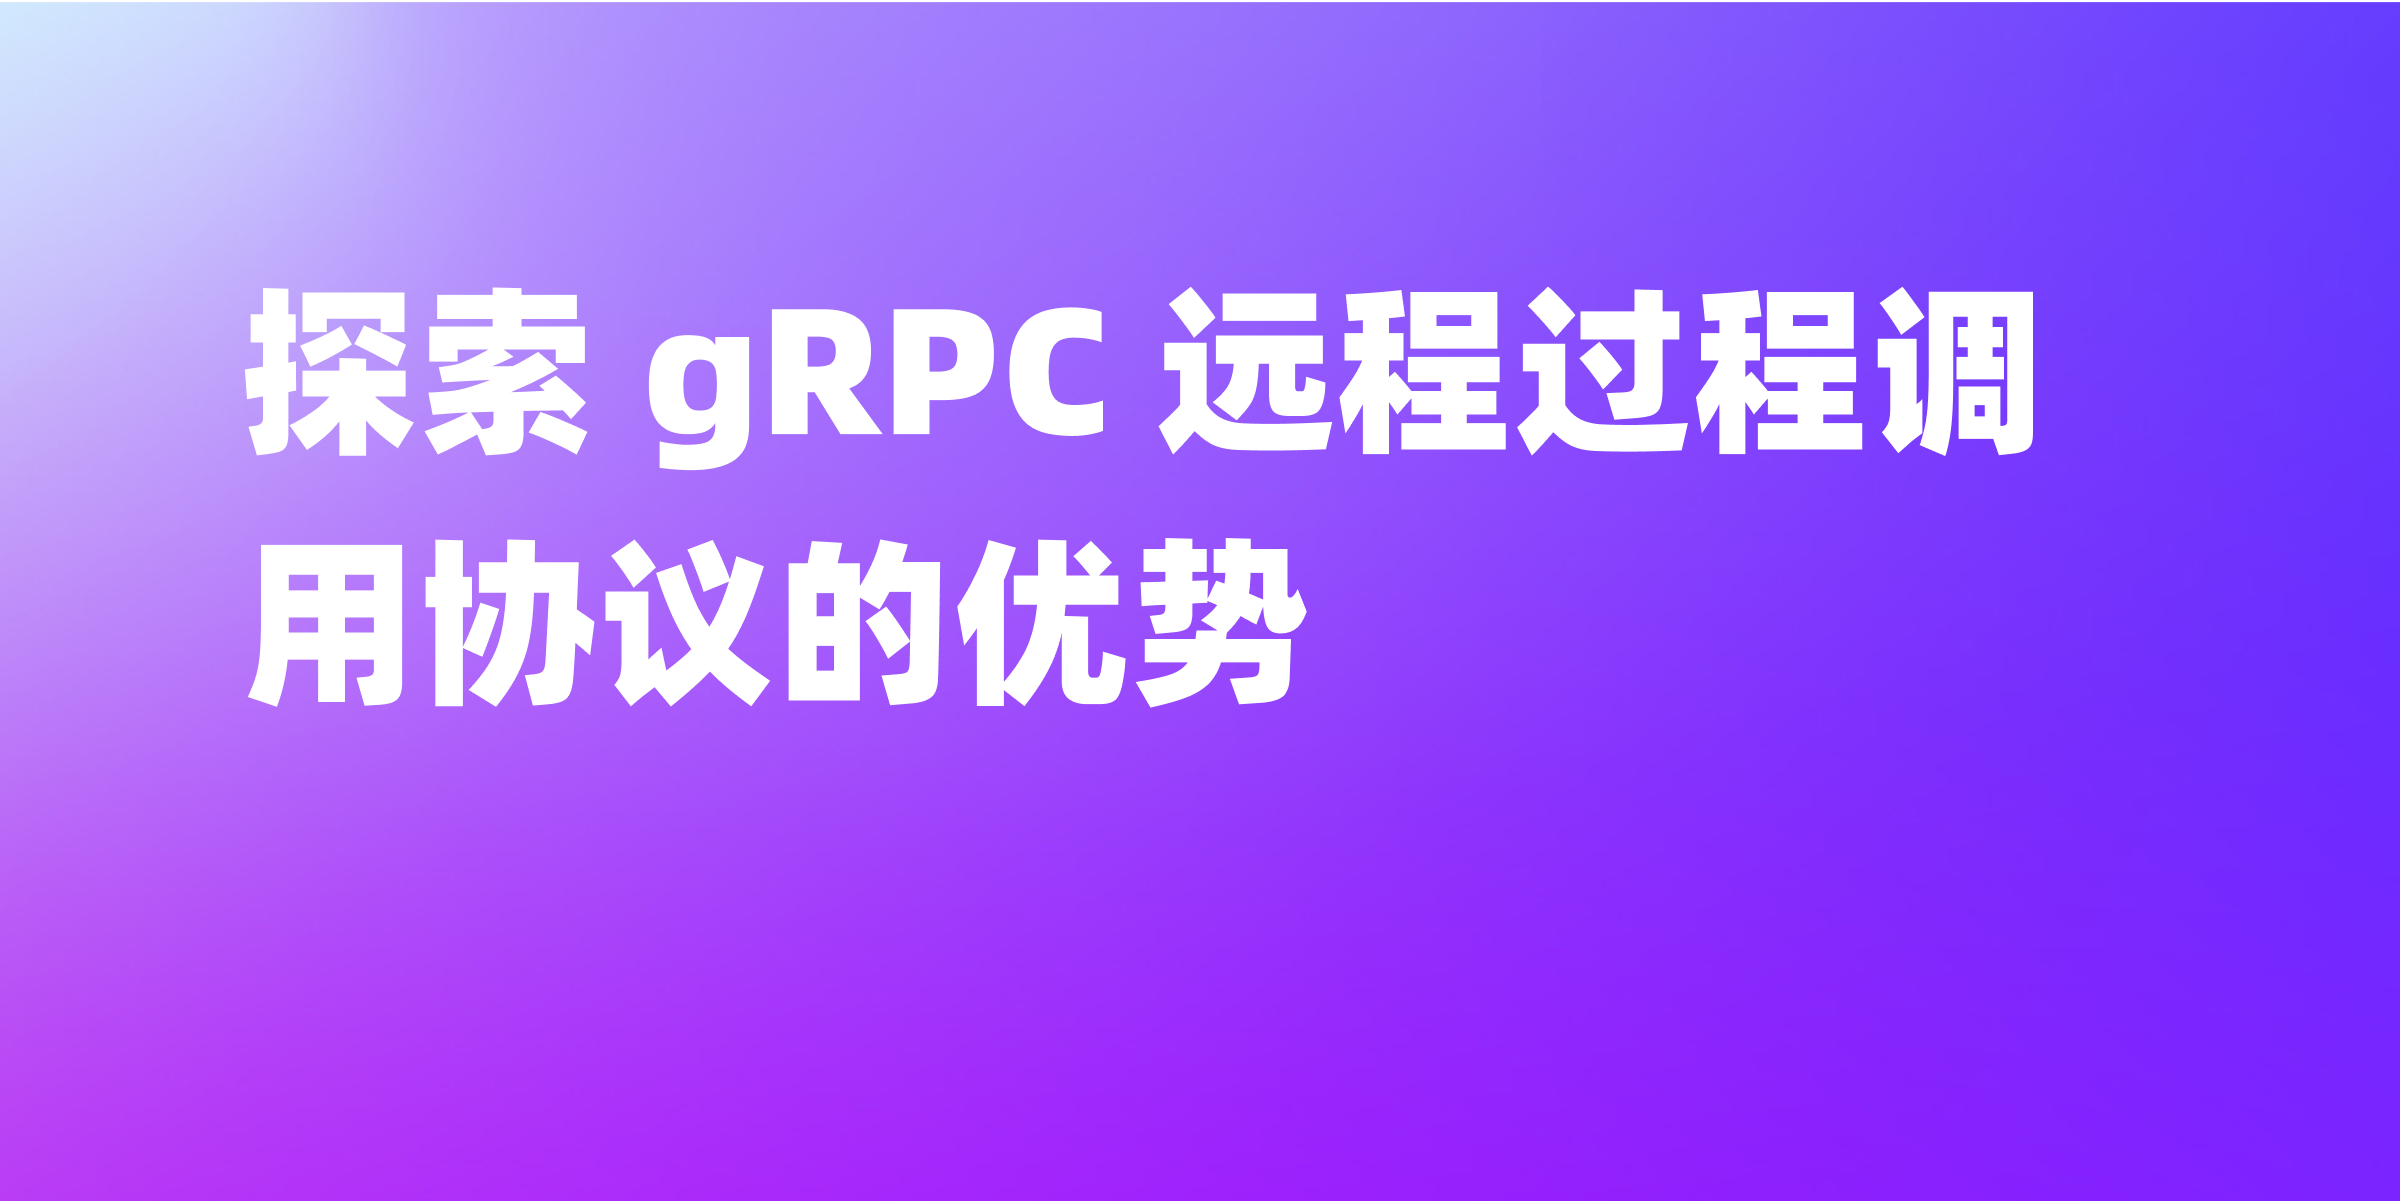 什么是 gRPC？怎么进行调试？